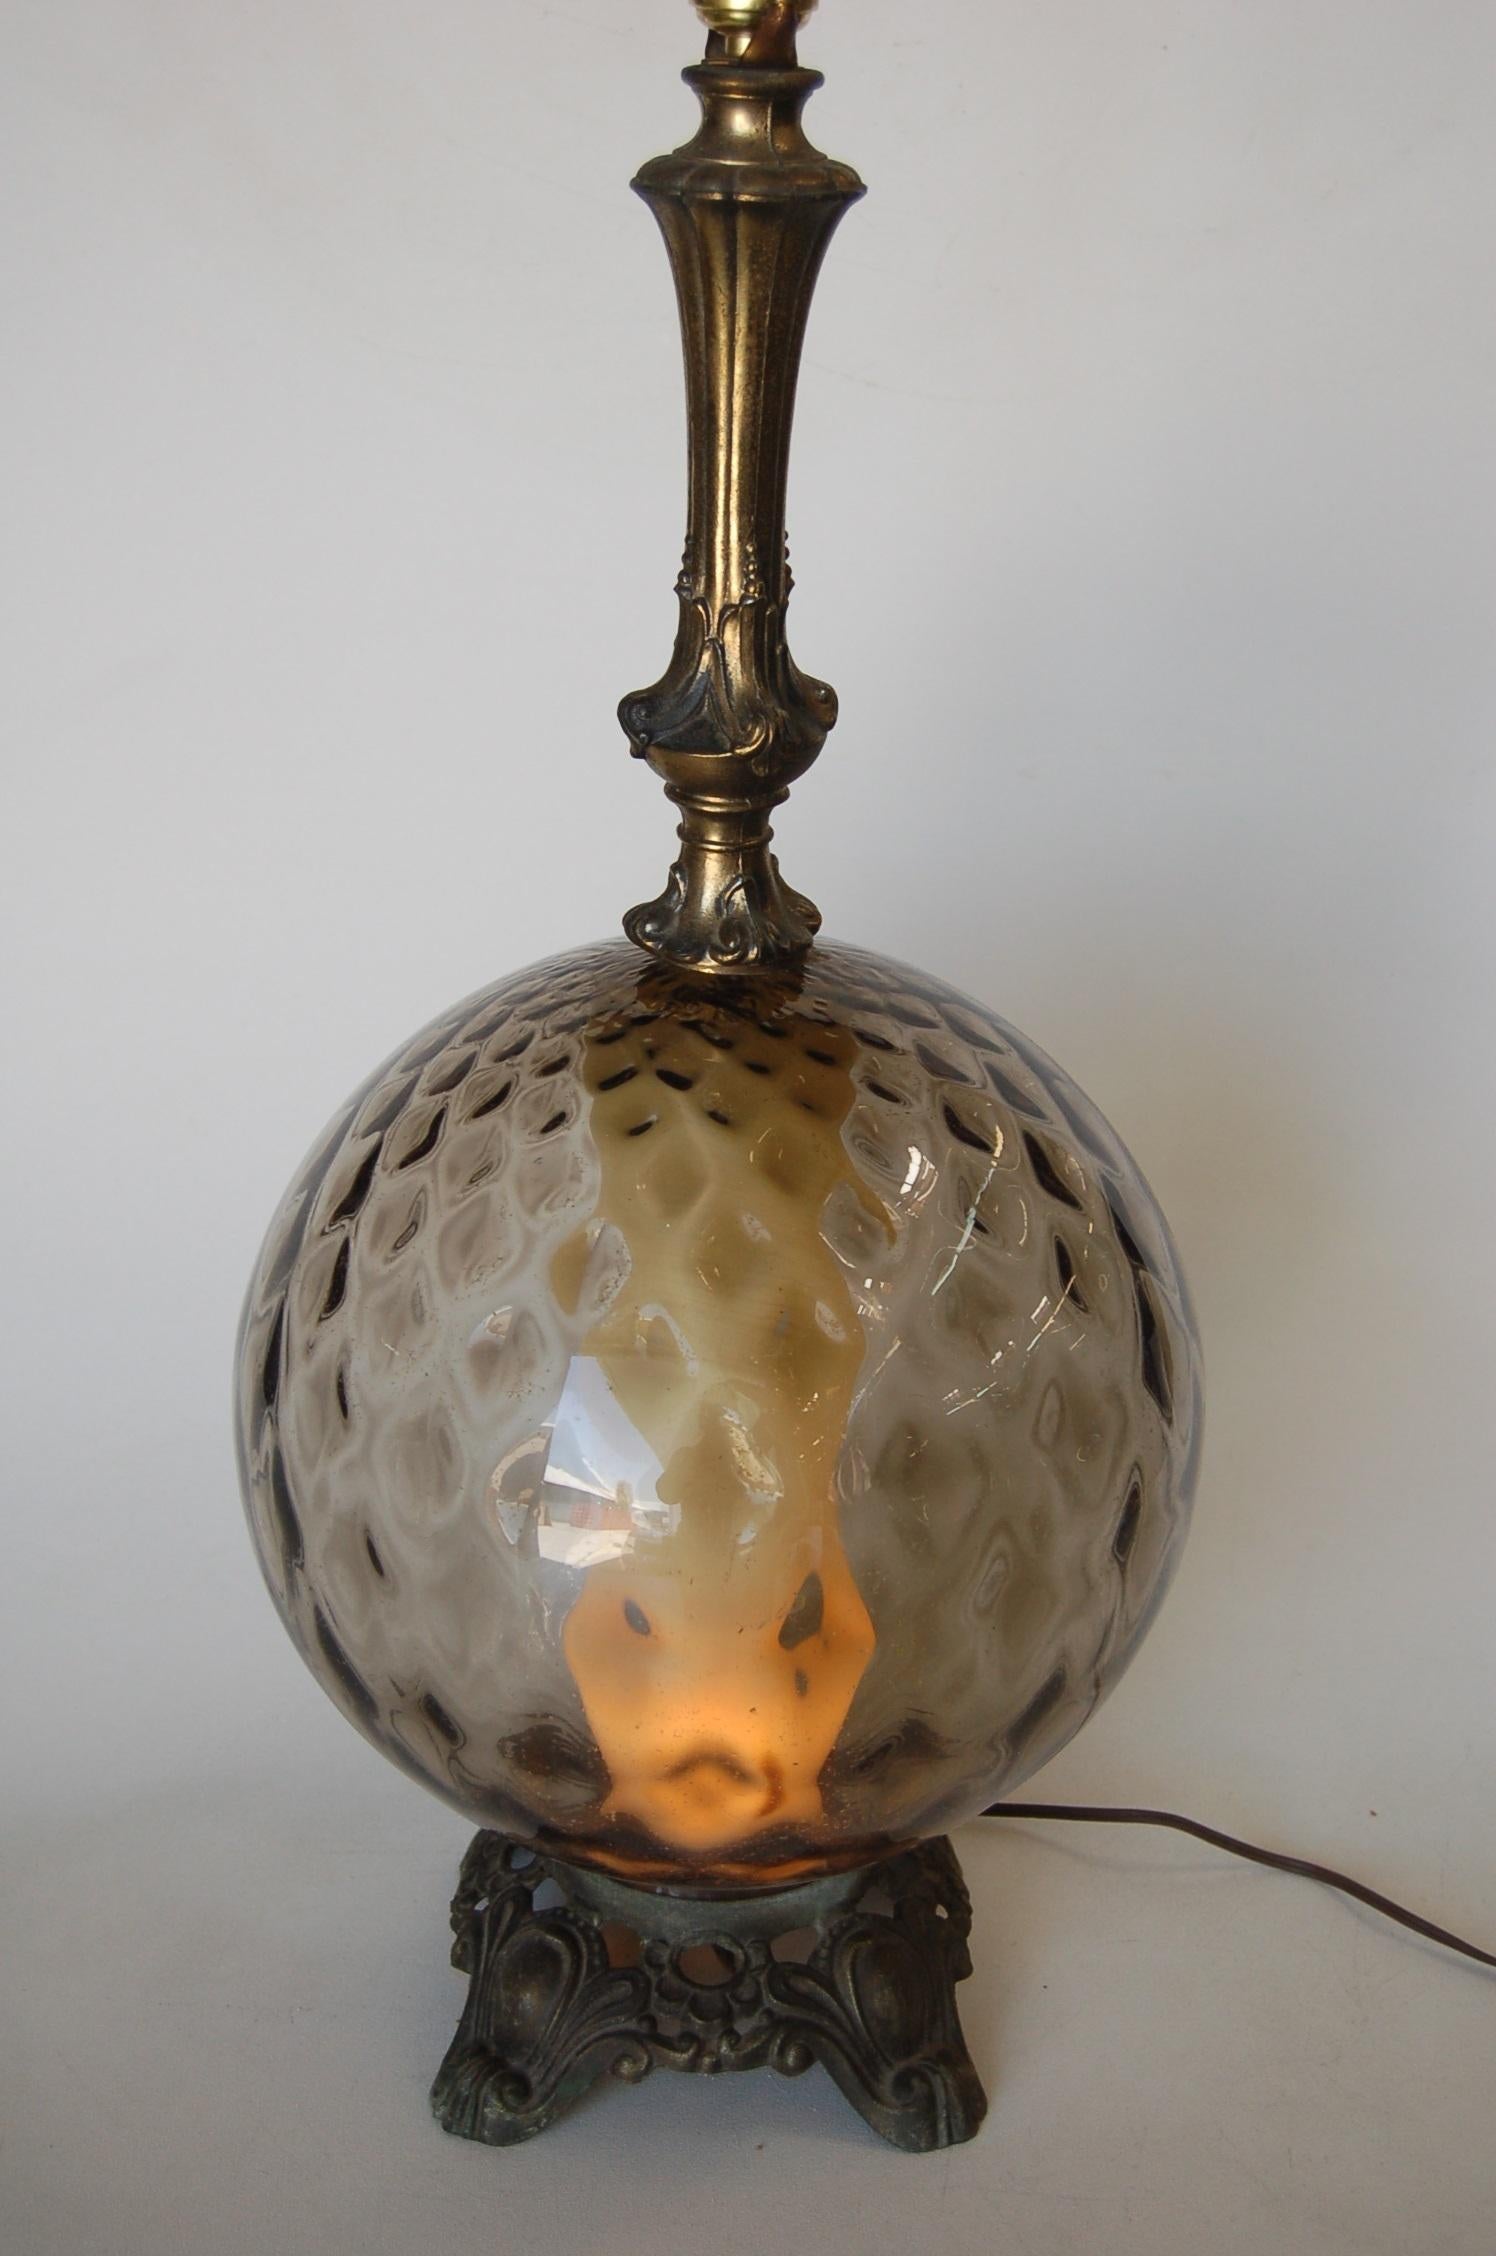 Paar Hollywood-Regency-Tischlampen aus strukturiertem Rauchglas mit innerem Glühlicht und Akzent.

Maße: 28